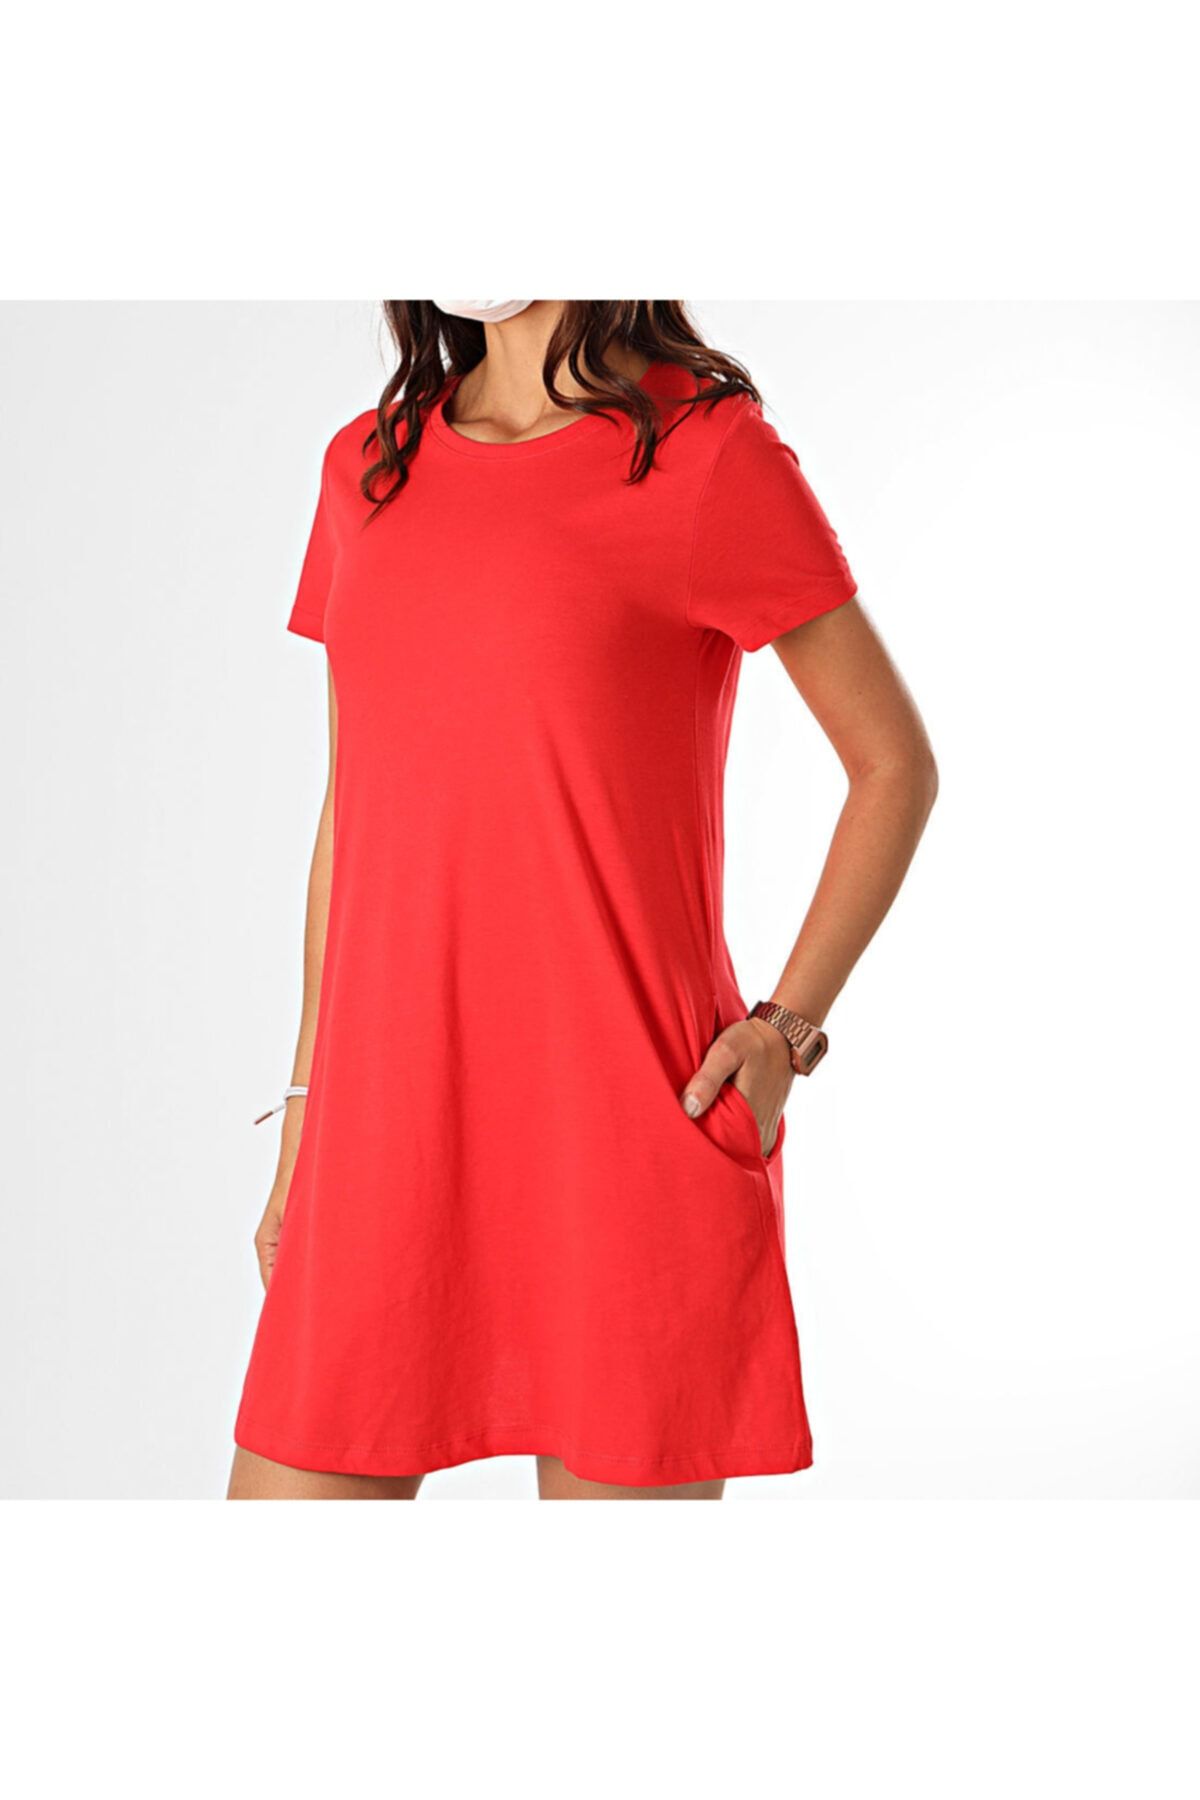 Only Kadın Kırmızı Mini Elbise